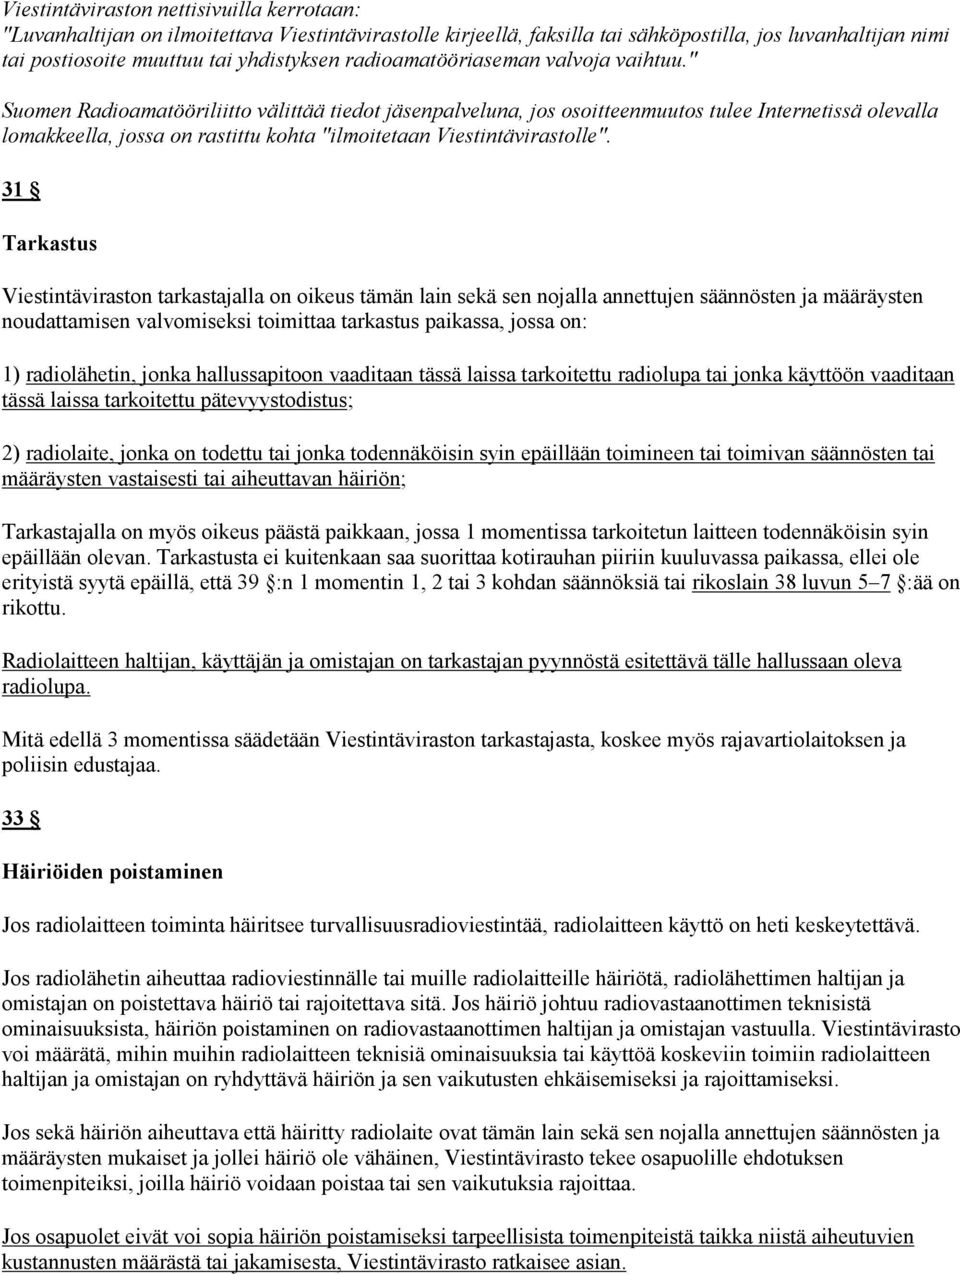 " Suomen Radioamatööriliitto välittää tiedot jäsenpalveluna, jos osoitteenmuutos tulee Internetissä olevalla lomakkeella, jossa on rastittu kohta "ilmoitetaan Viestintävirastolle".